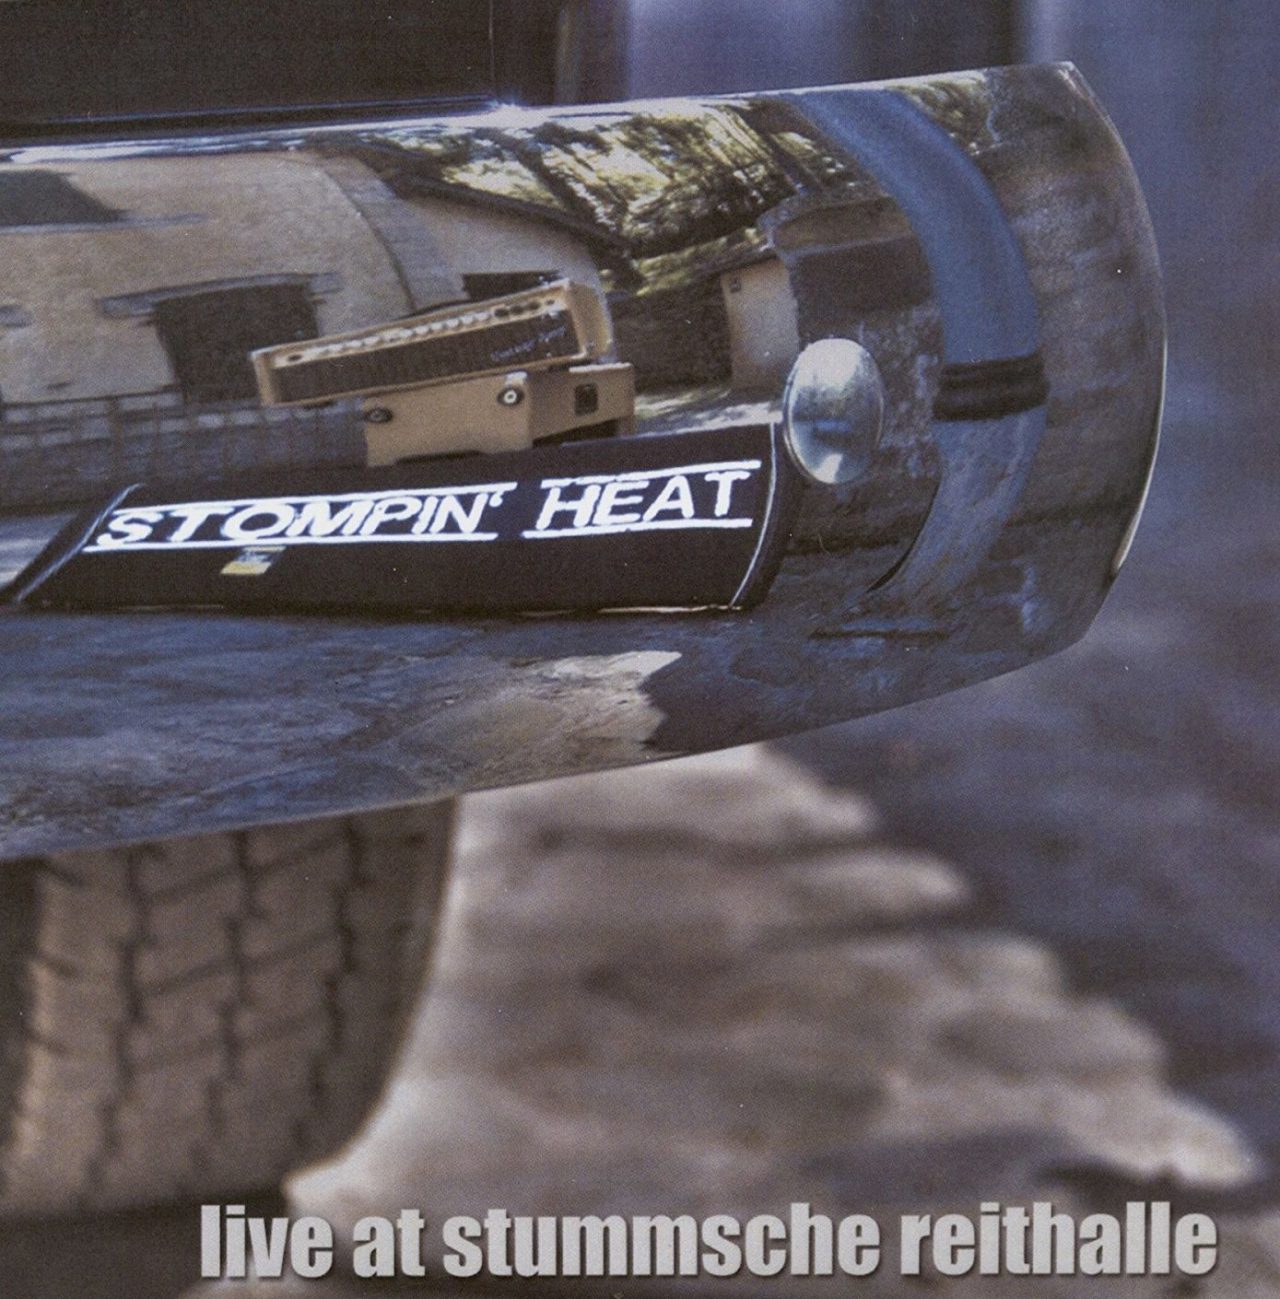 Stompin‘ Heat – Live At Stummsche Reithalle